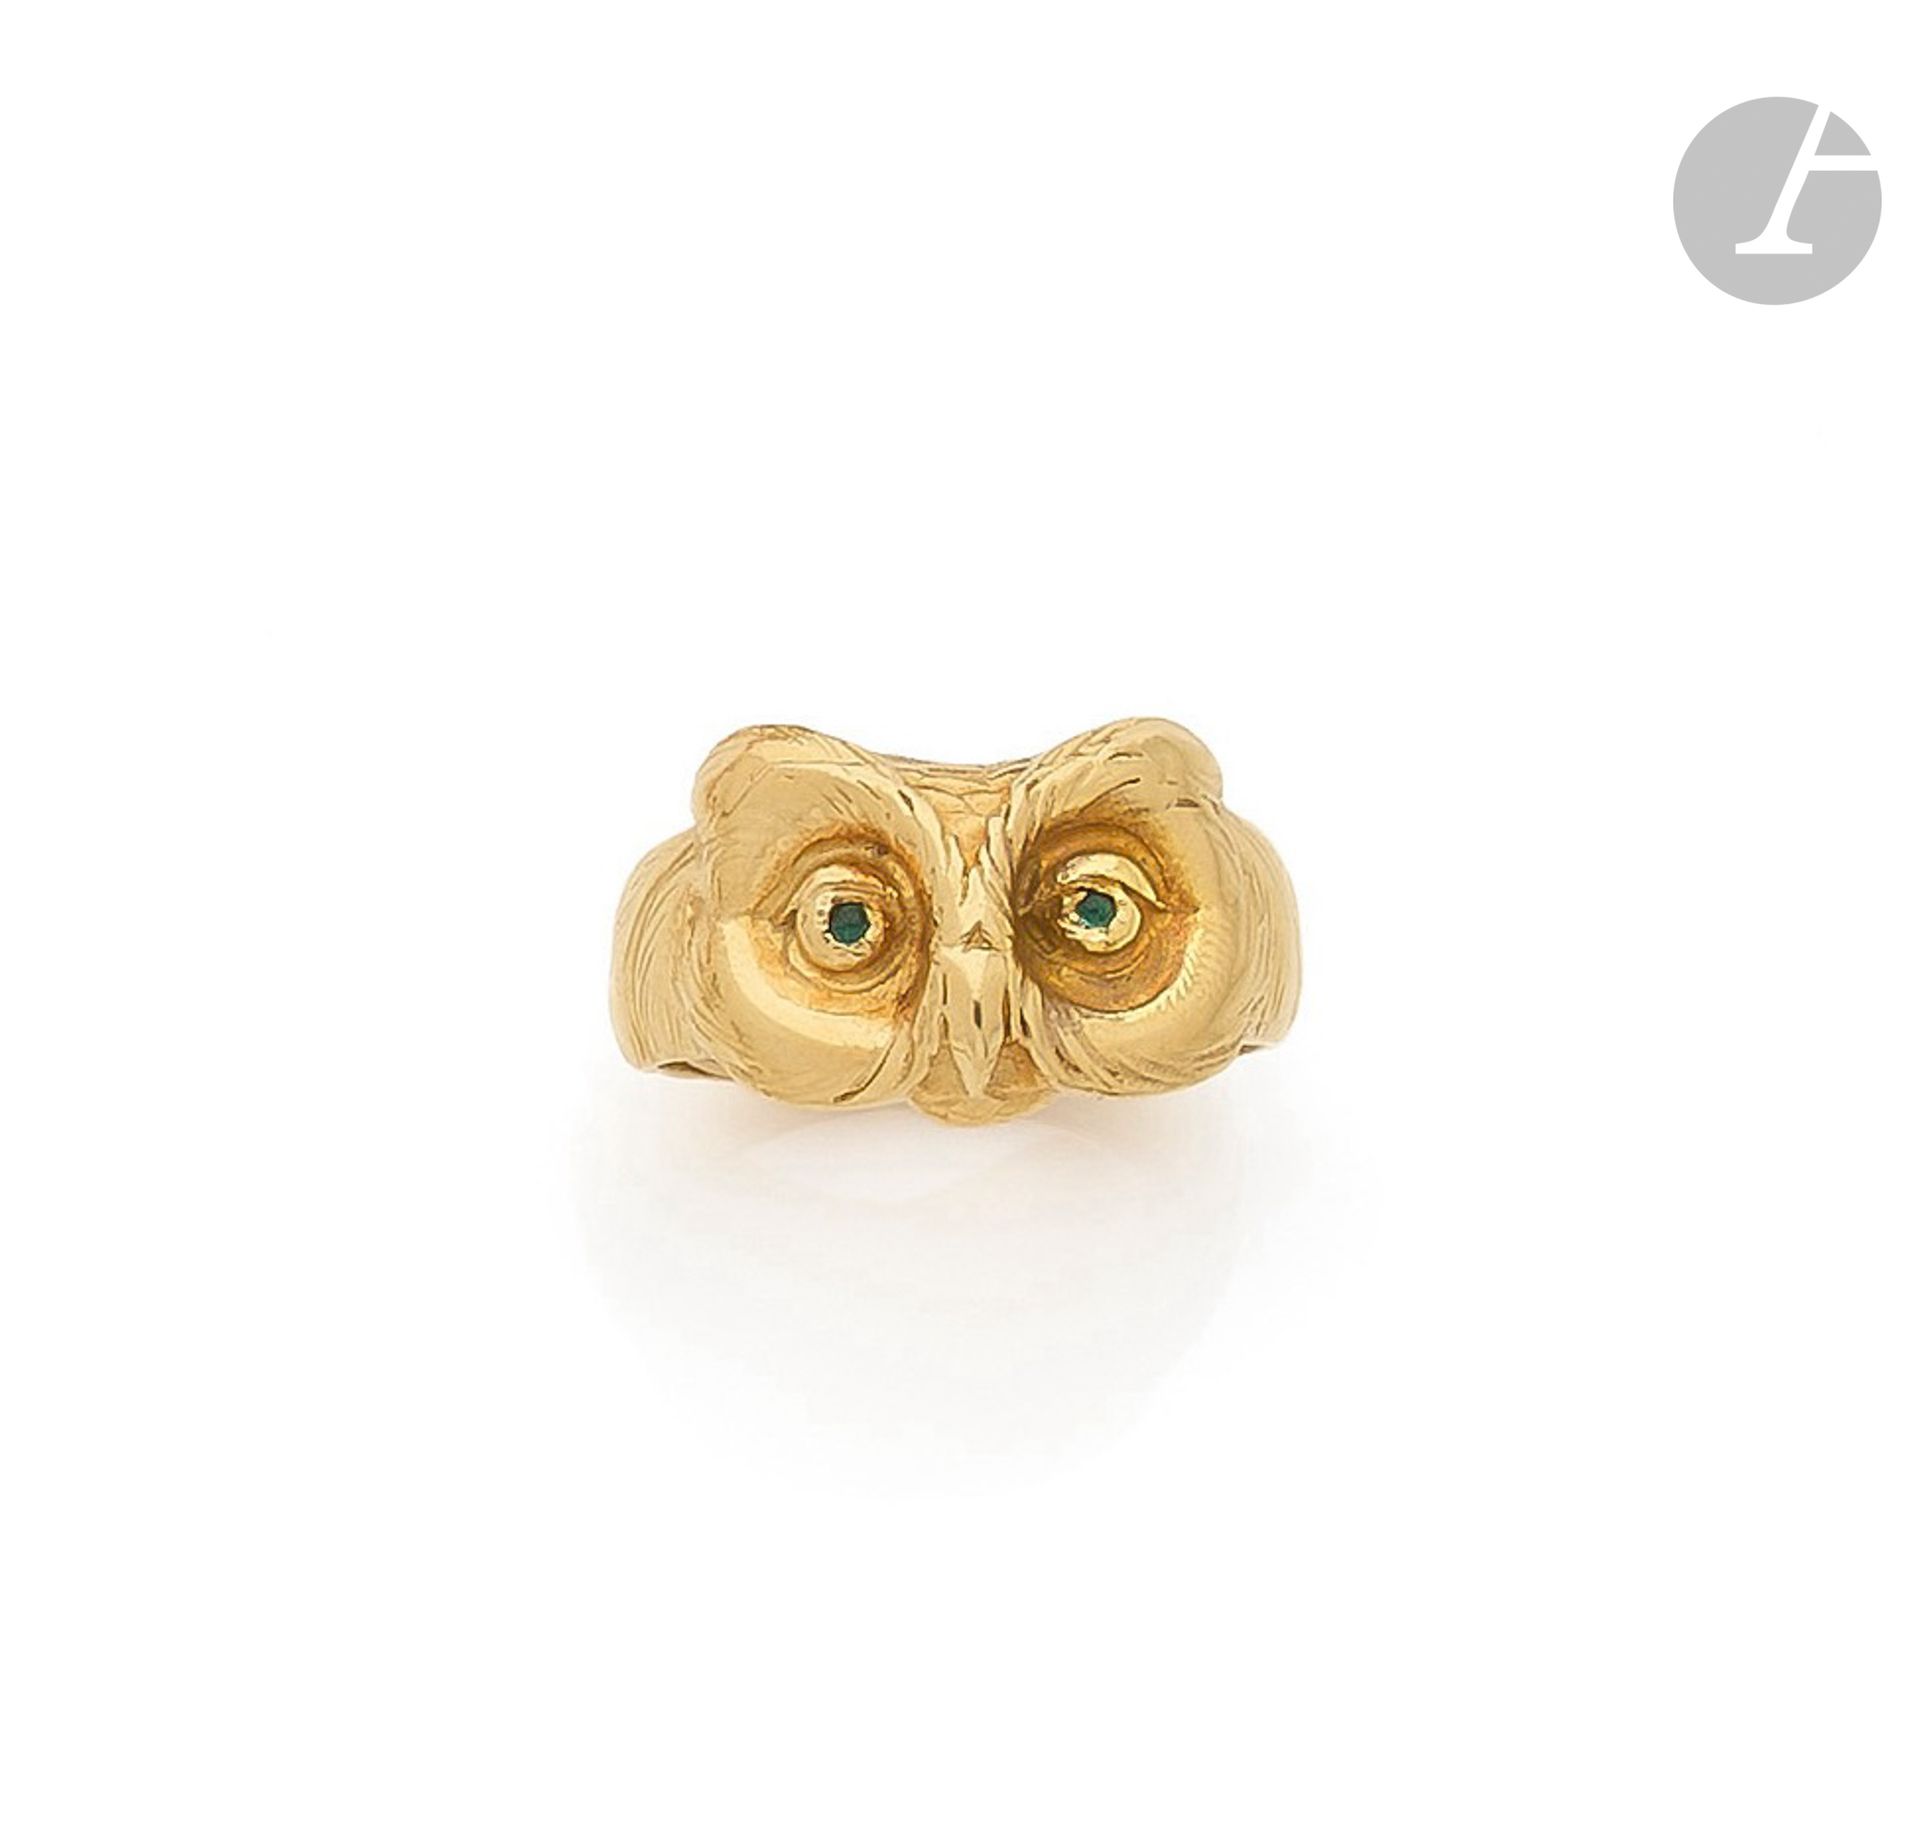 Null 一枚18K（750）金戒指，雕刻成猫头鹰的形状，每只眼睛都镶嵌着绿色玻璃膏。20世纪初的法国作品。手指尺寸：54/55。毛重：12.8克

一枚20世&hellip;